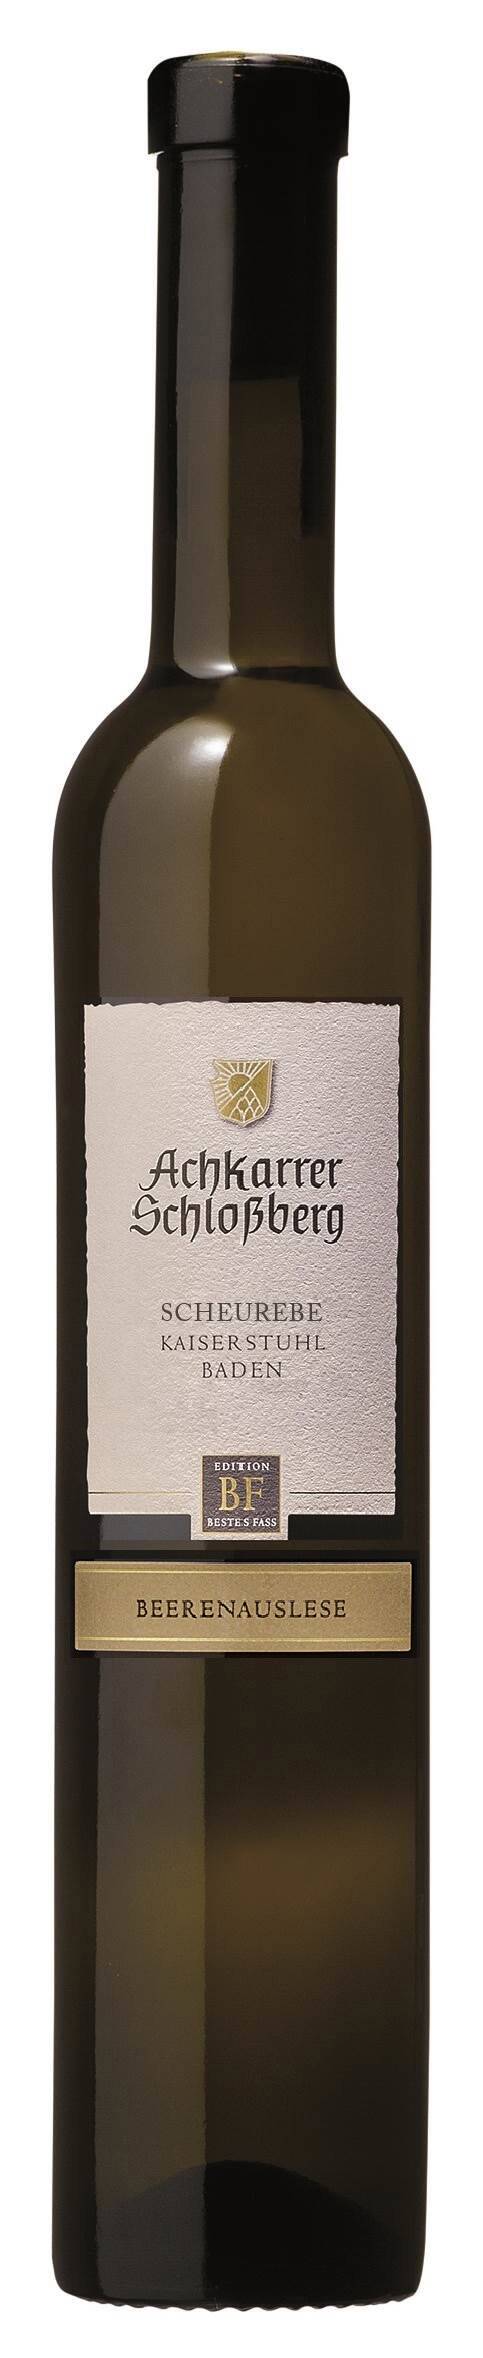 Achkarrer Schlossberg Scheurebe - Beerenauslese -